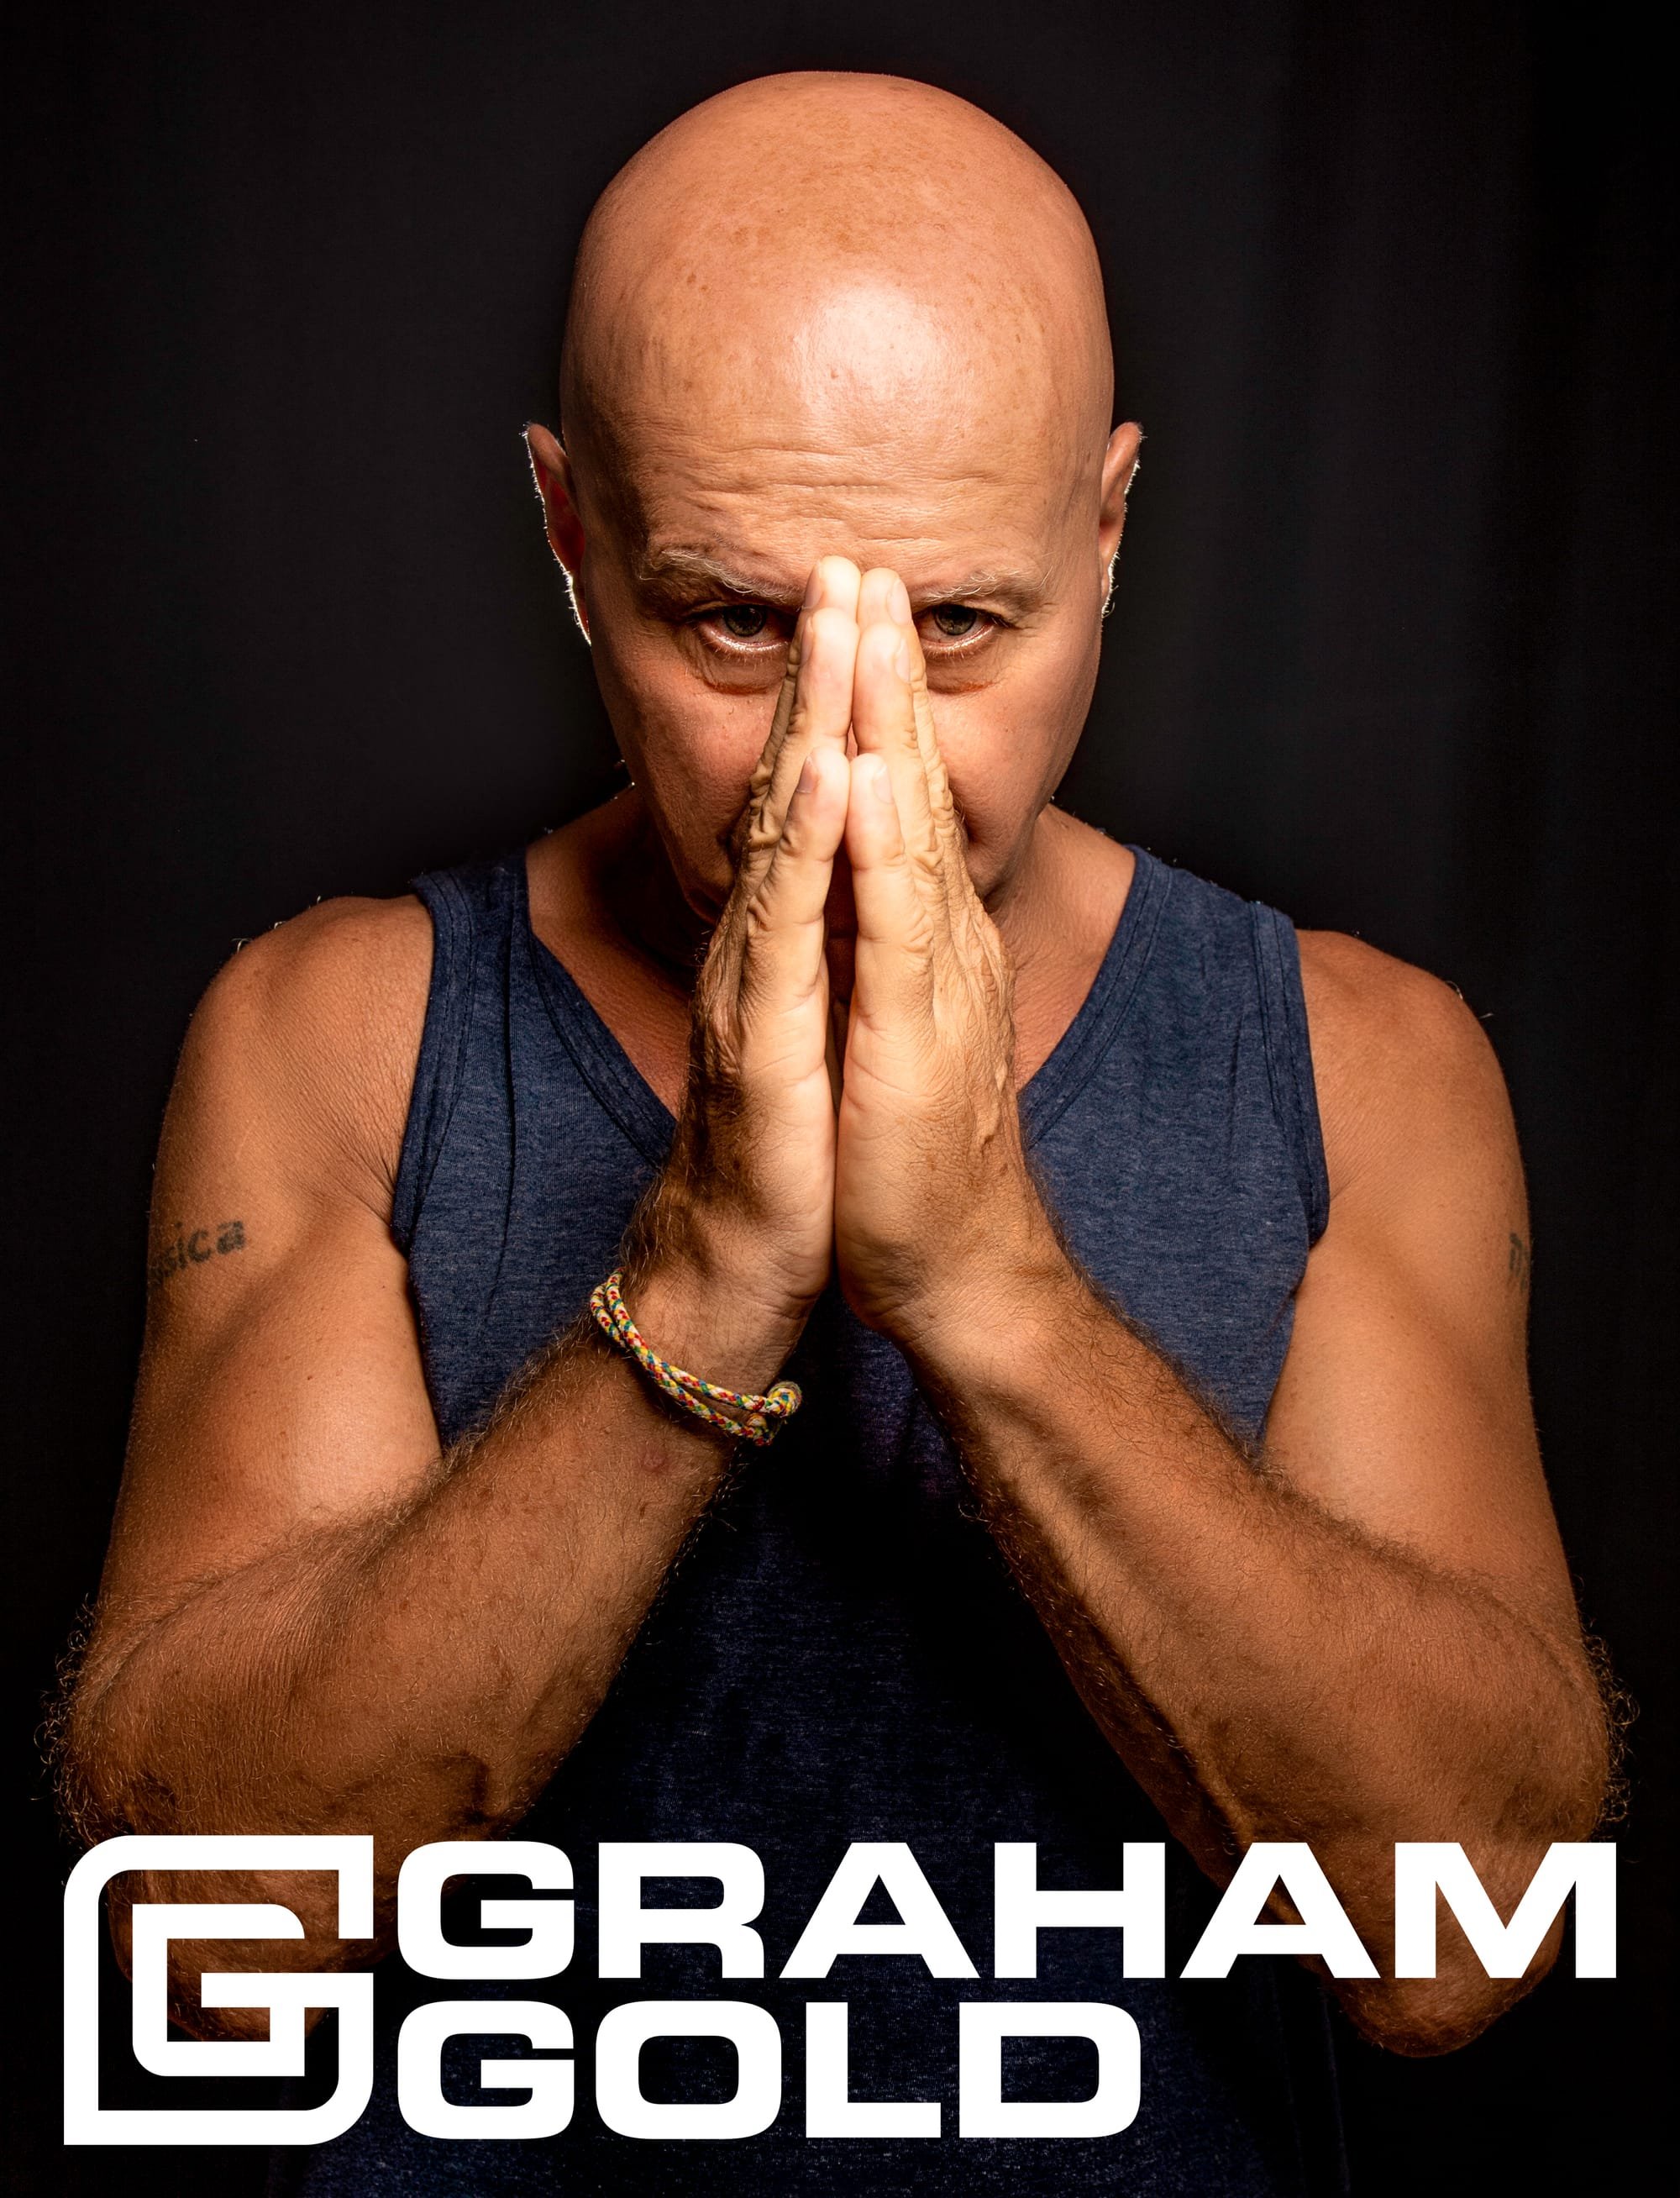 Graham Gold Releases Tracklist For 'Esta La Musica' 303